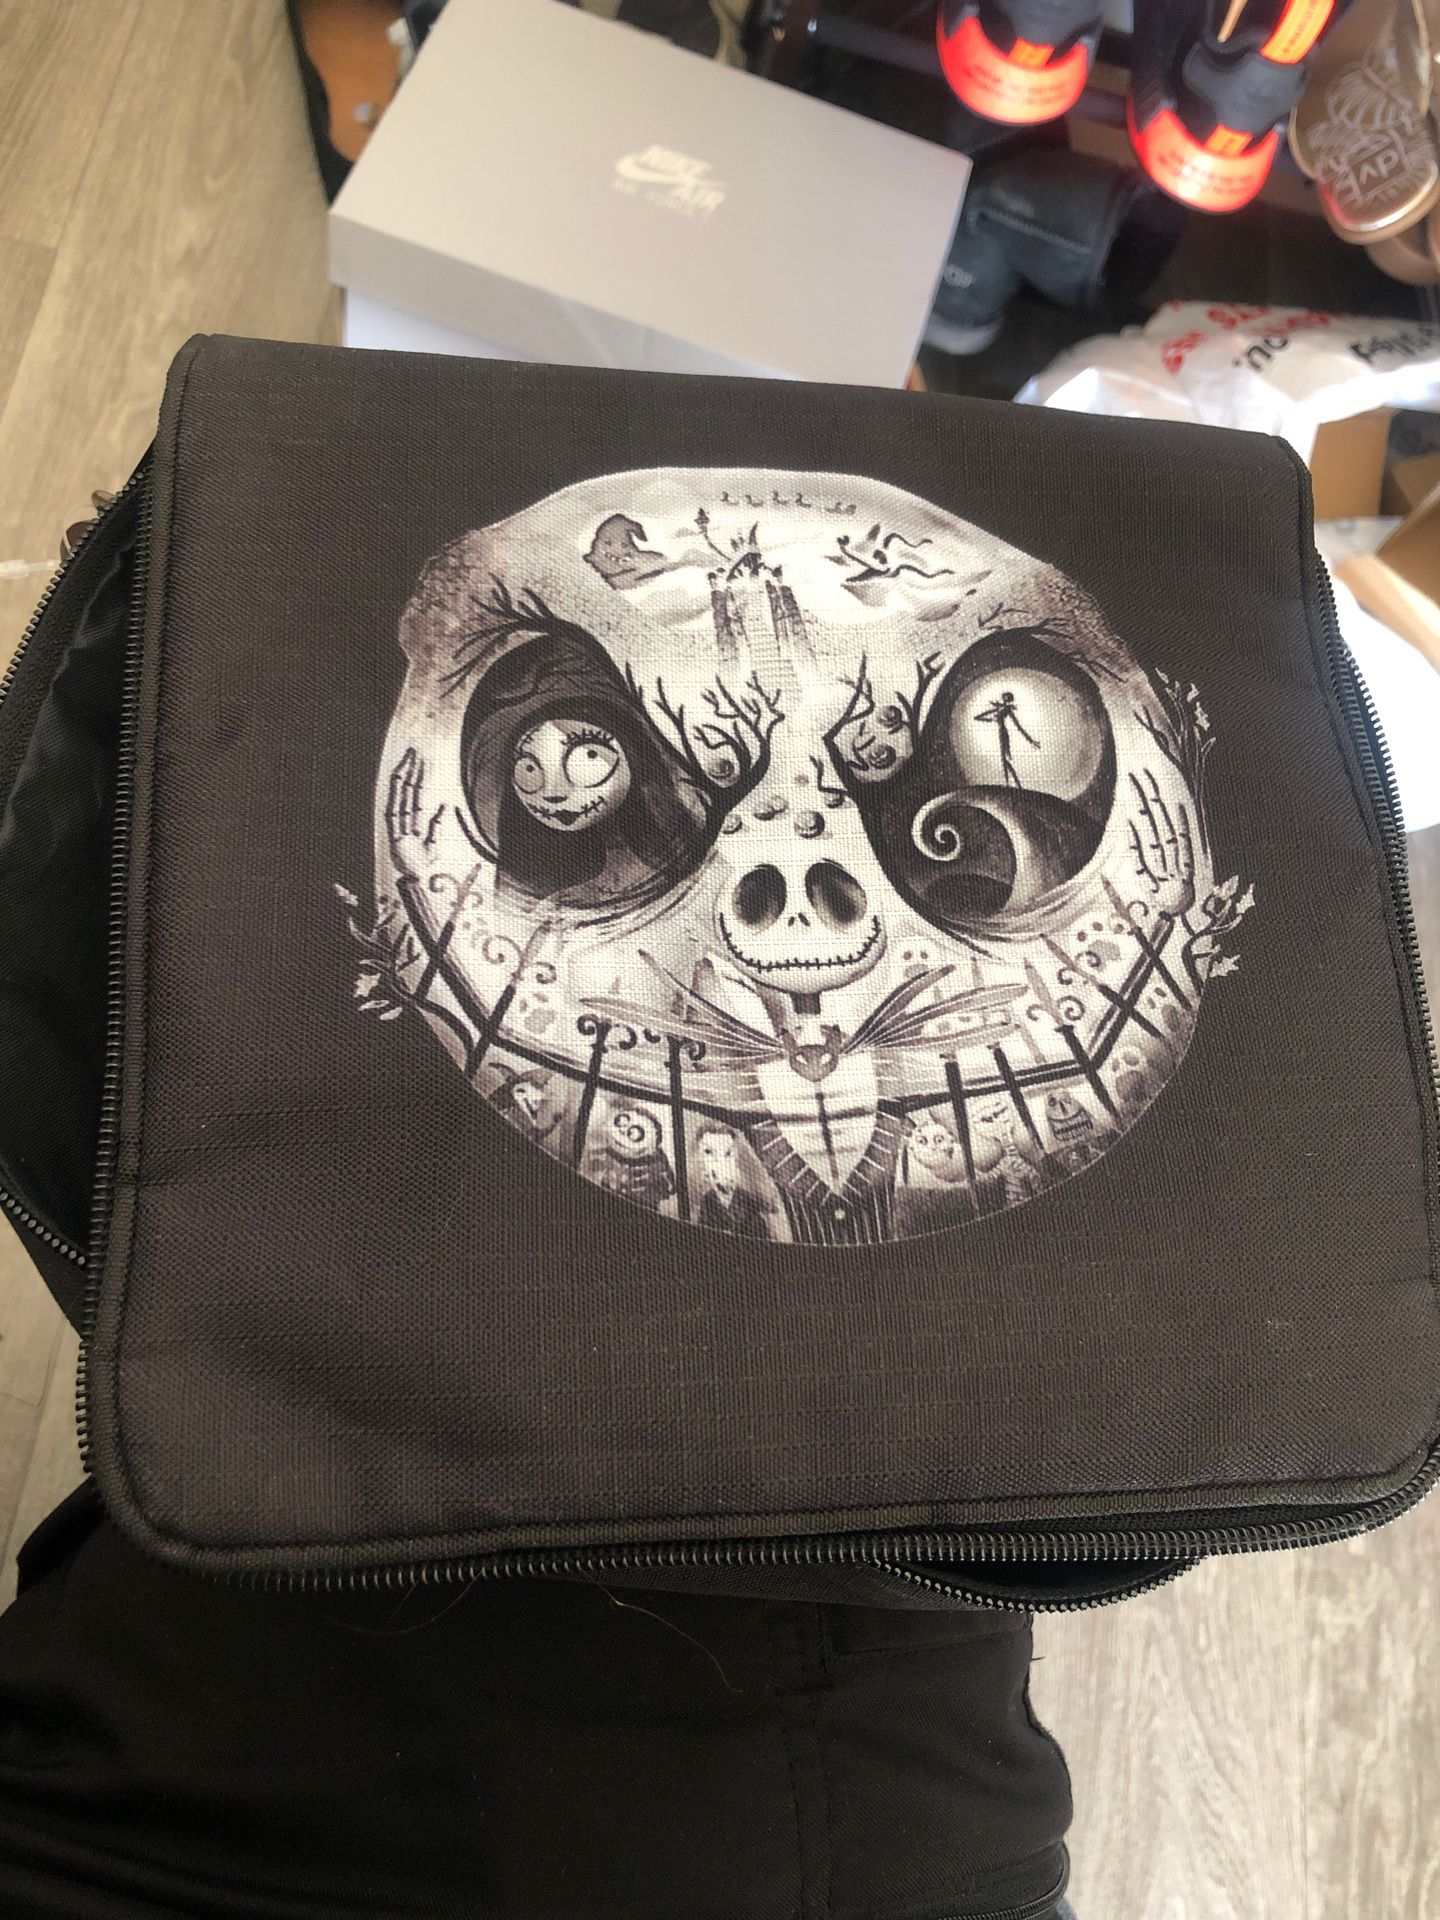 Disney pin backpack